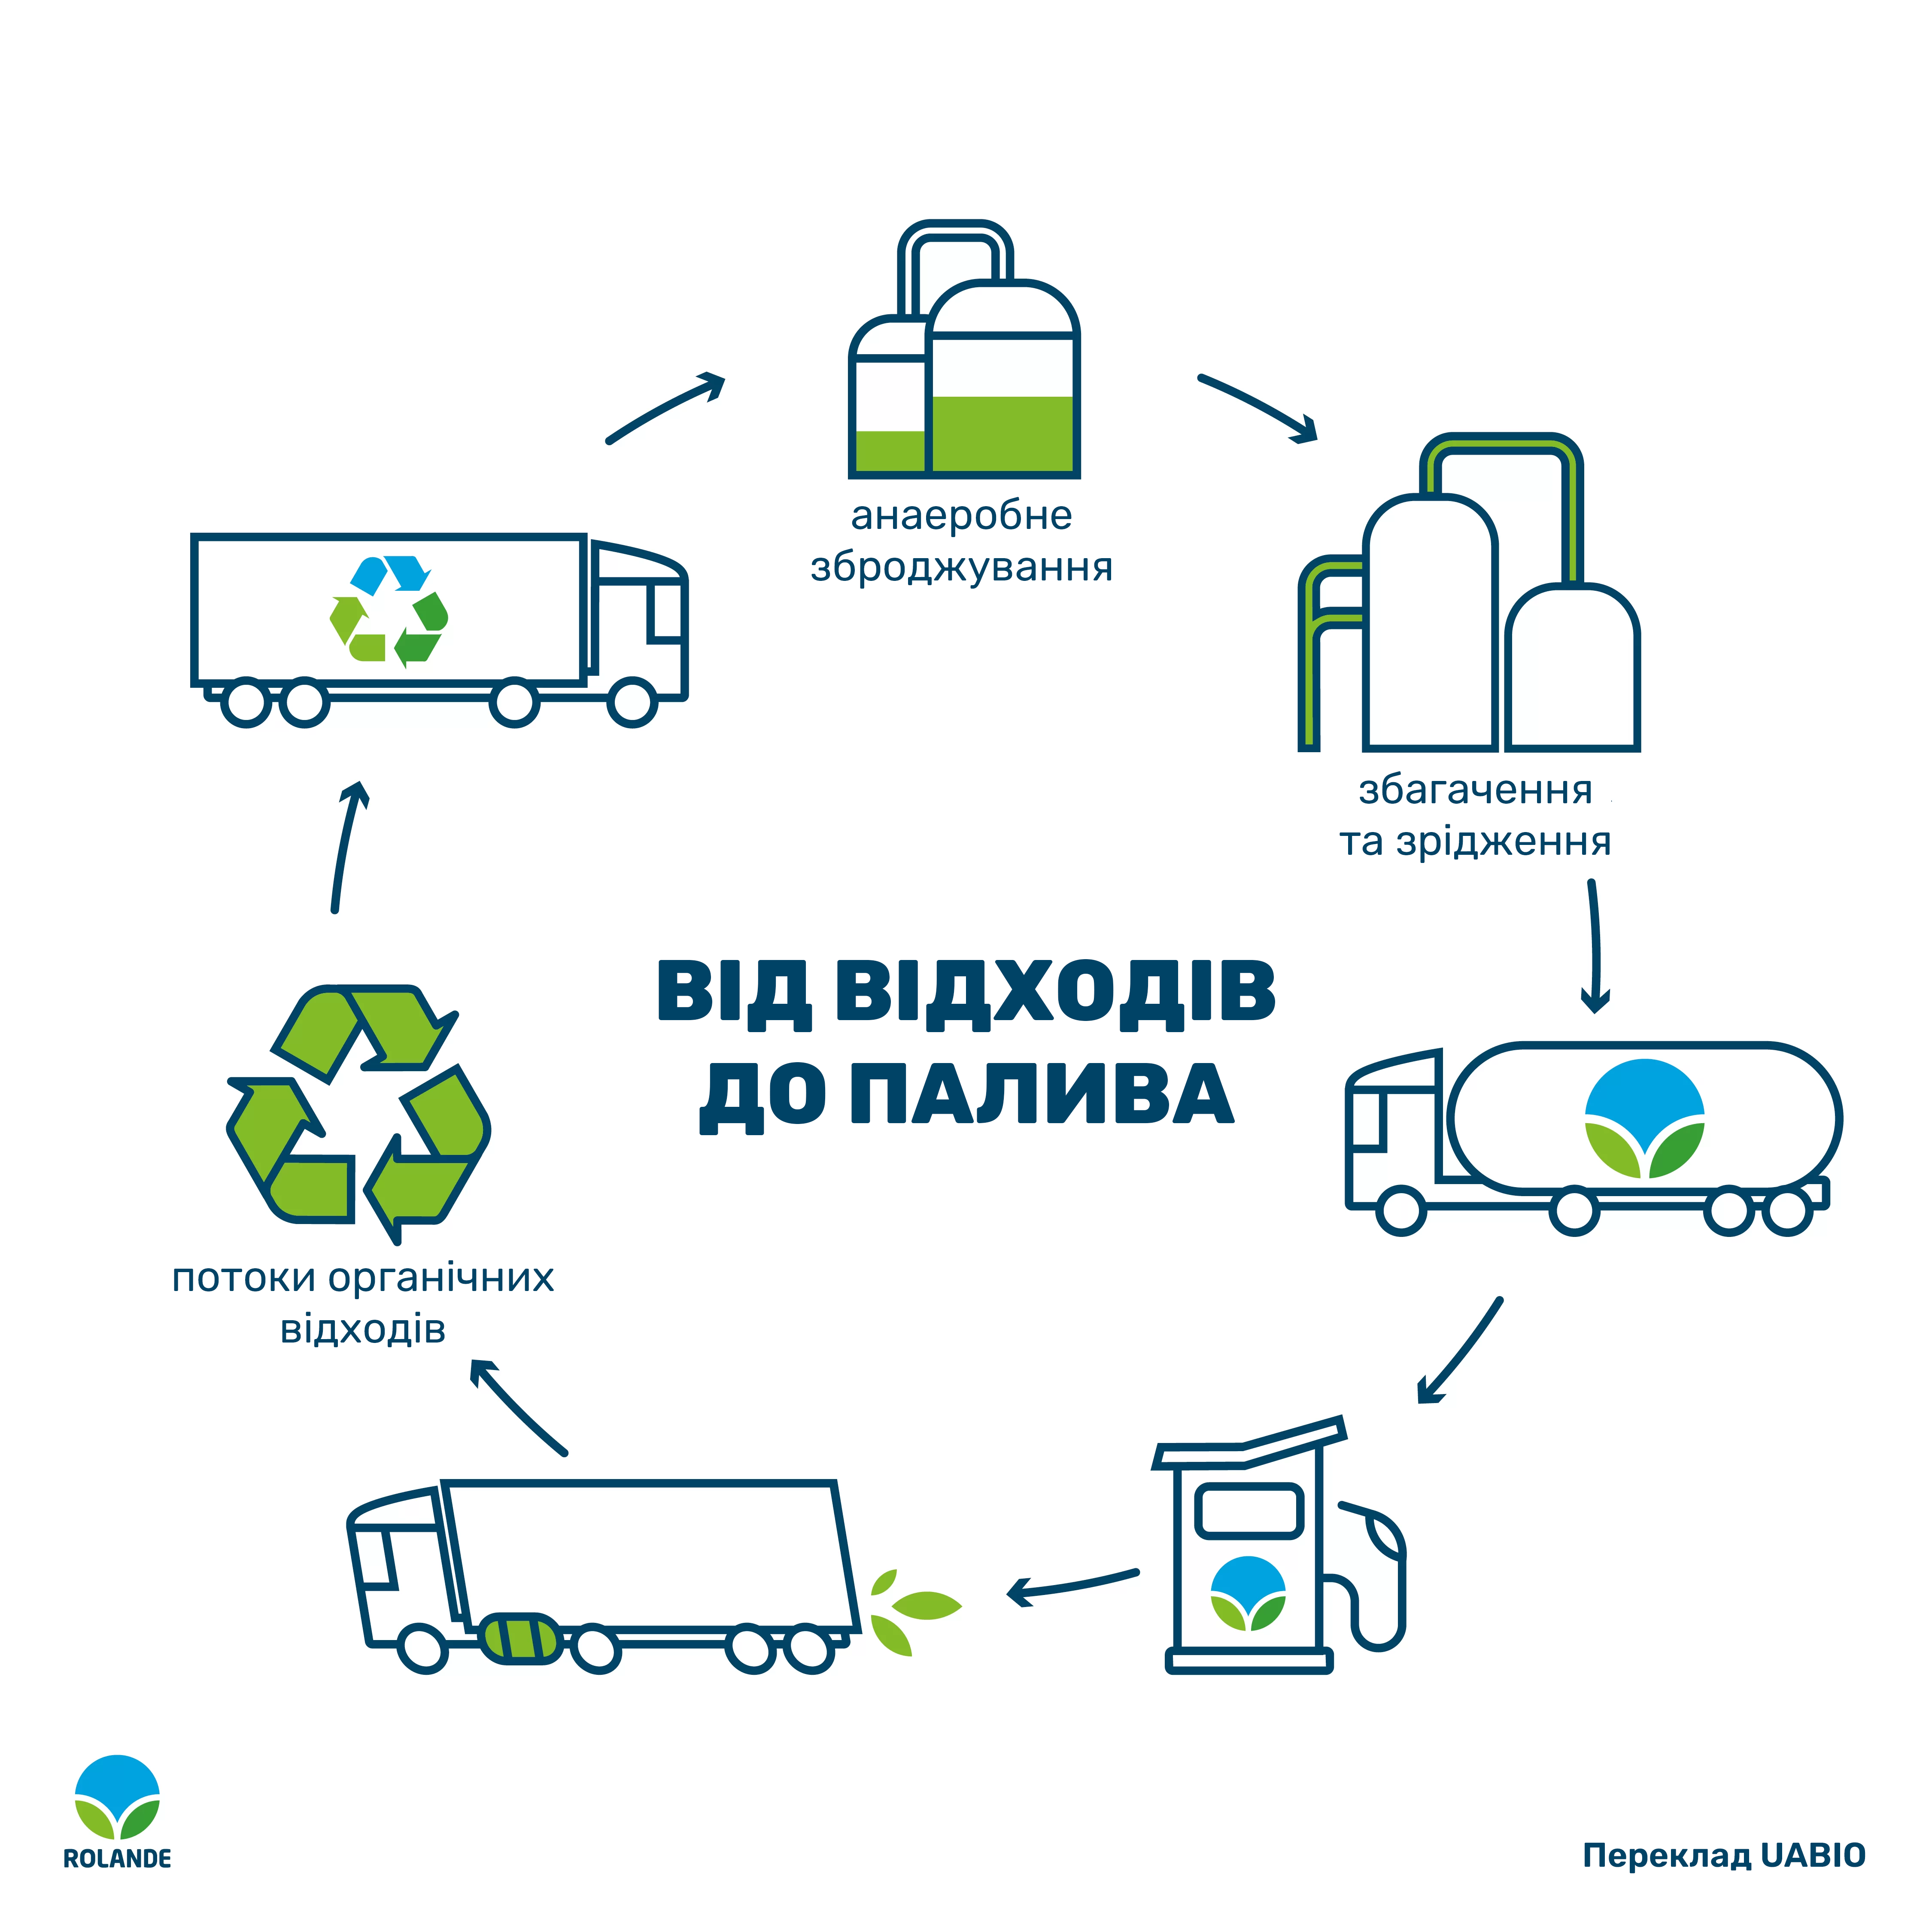 Виробництво bio-LNG в Україні можливе вже найближчим часом